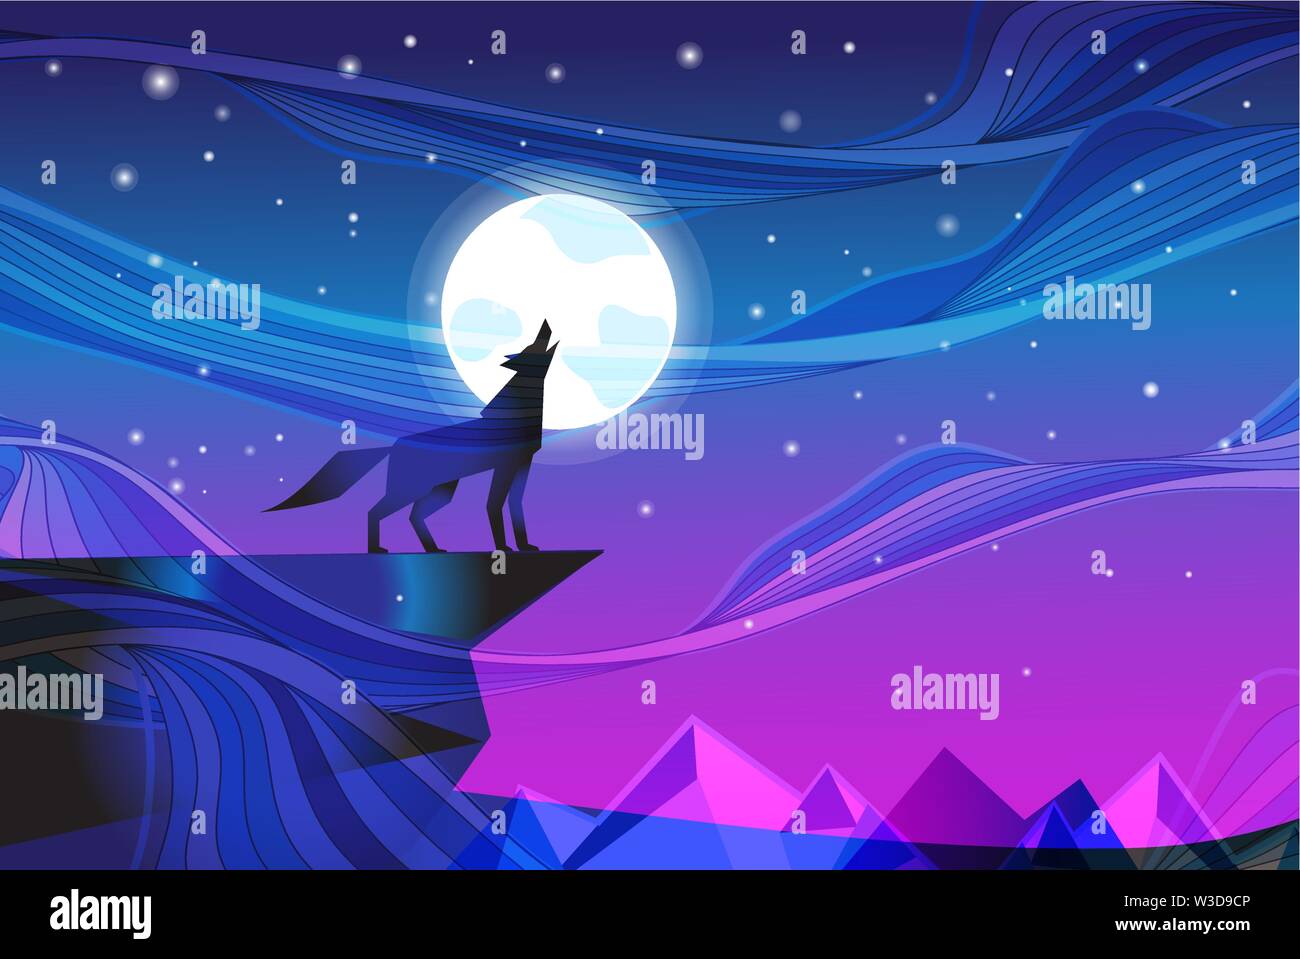 Nacht Landschaft mit Mond und howling wolf gegen den Sternenhimmel. Design vorlage für Poster oder ein Buch. Stock Vektor